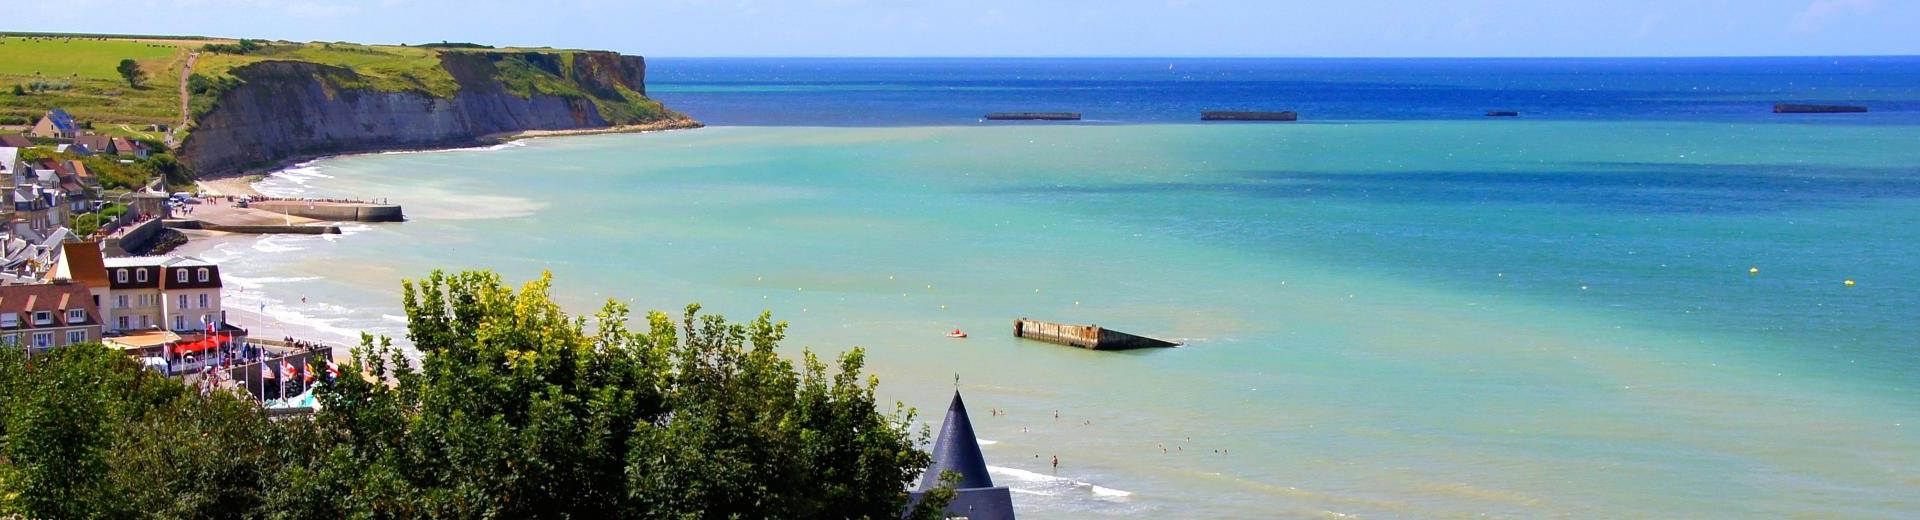 Ferienwohnungen & Ferienhäuser für Urlaub in der Bretagne - Casamundo